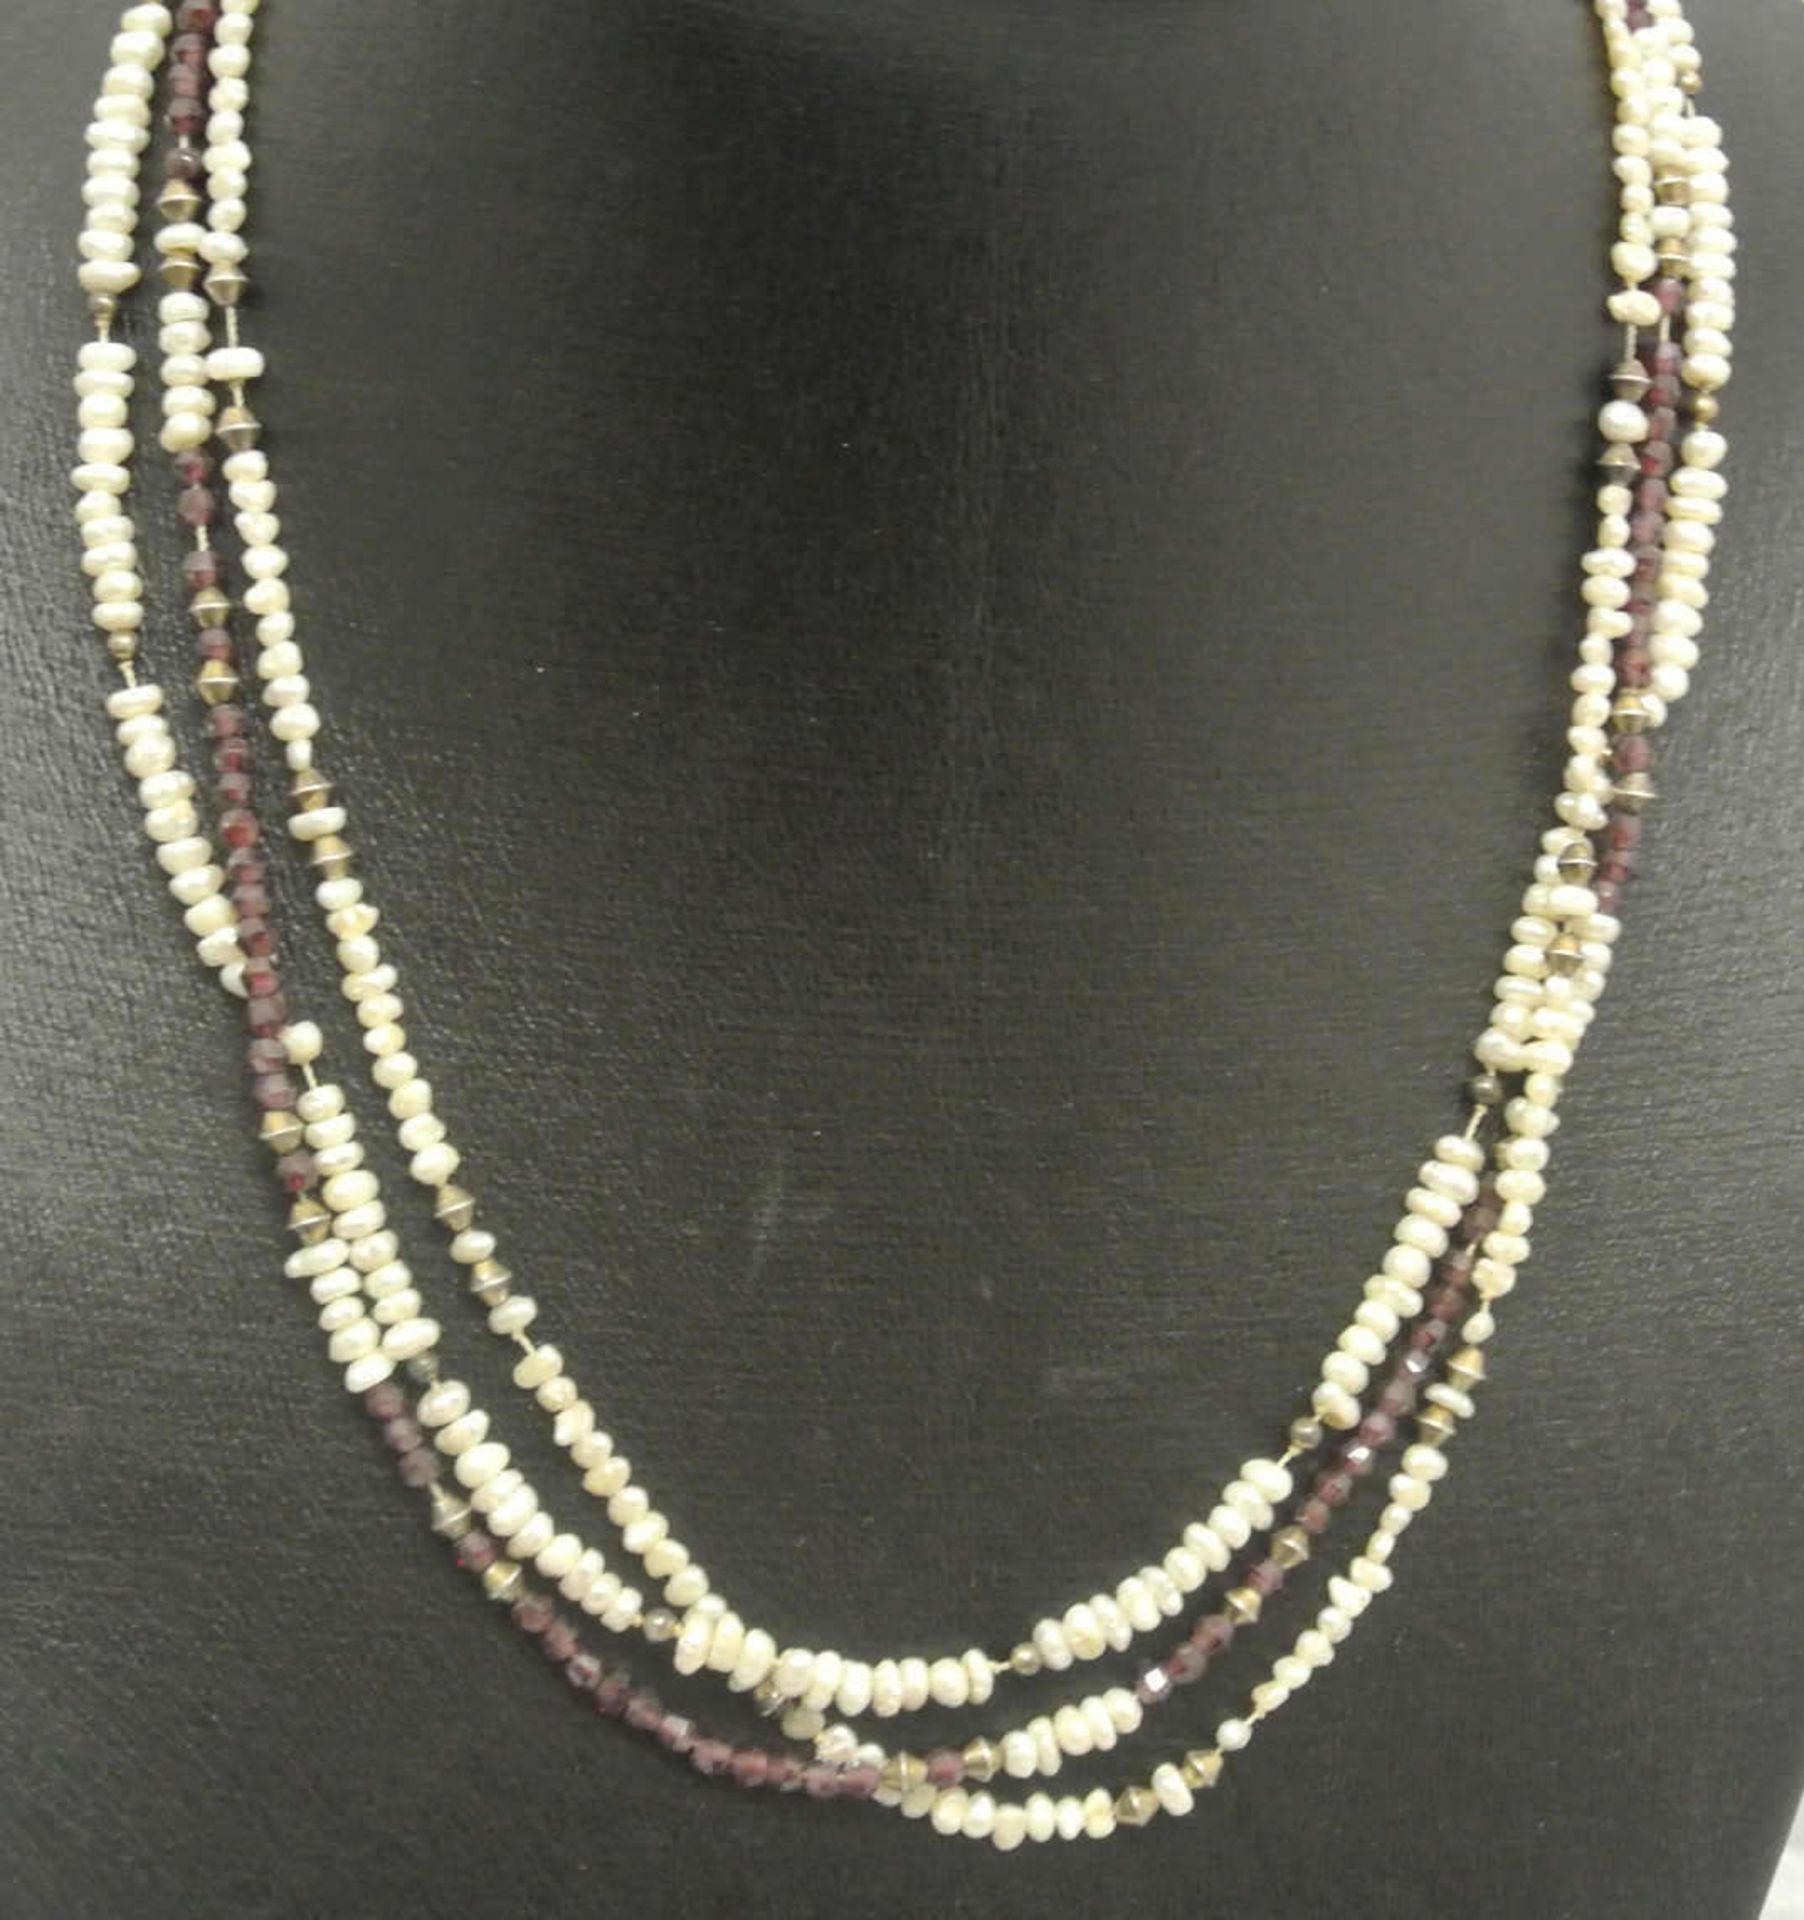 3-reihige Kette mit Perlen, Silber und Amethysten gefaßt. Länge ca. 50 cm